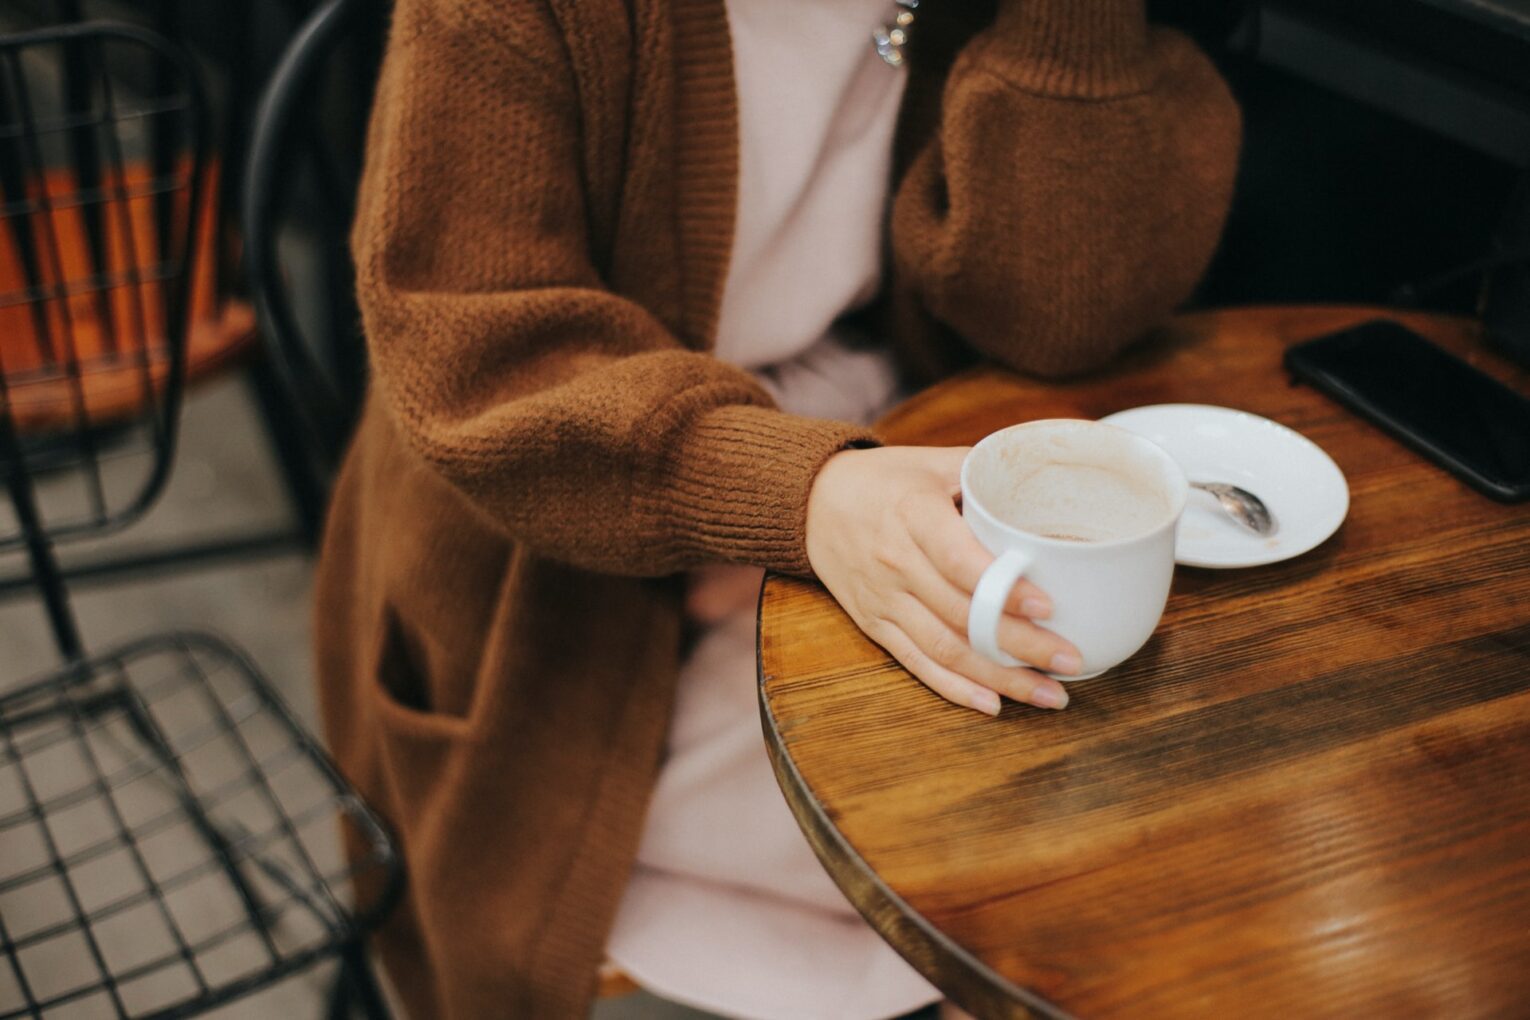 Aesthetic Cute Girl Studying Coffee Mug by aesthetic